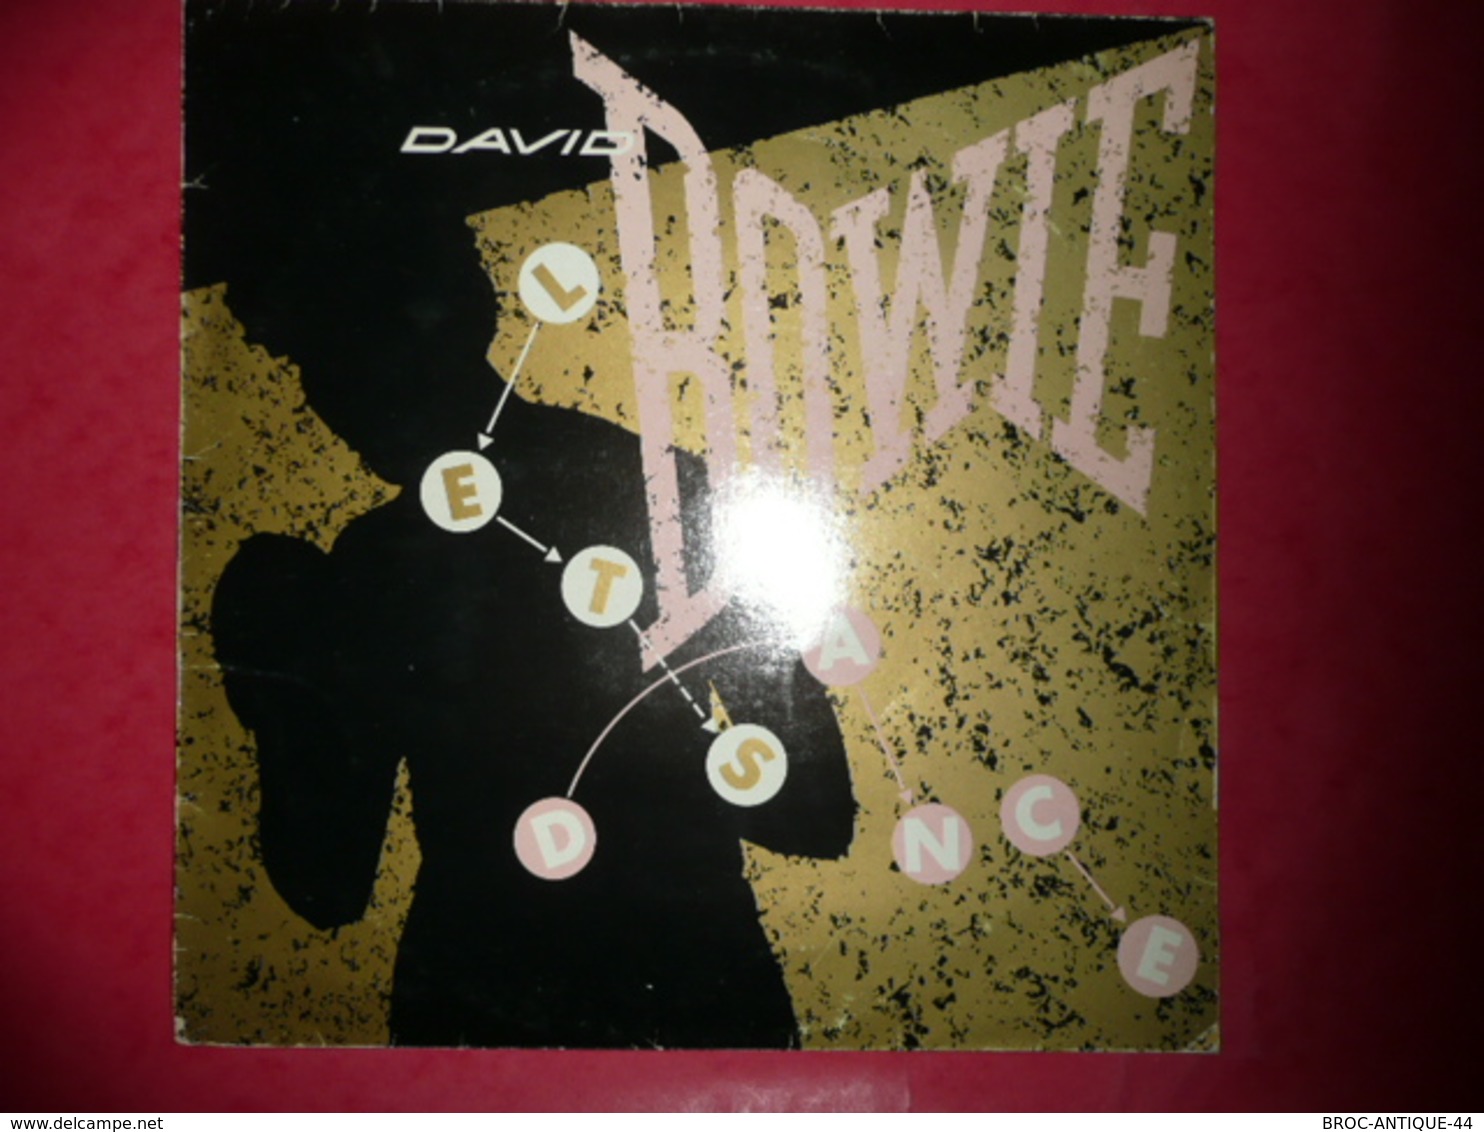 LP33 N°927 - BOWIE - LET'S DANCE - COMPILATION 2 TITRES ROCK POP GLAM BOWIE - Rock